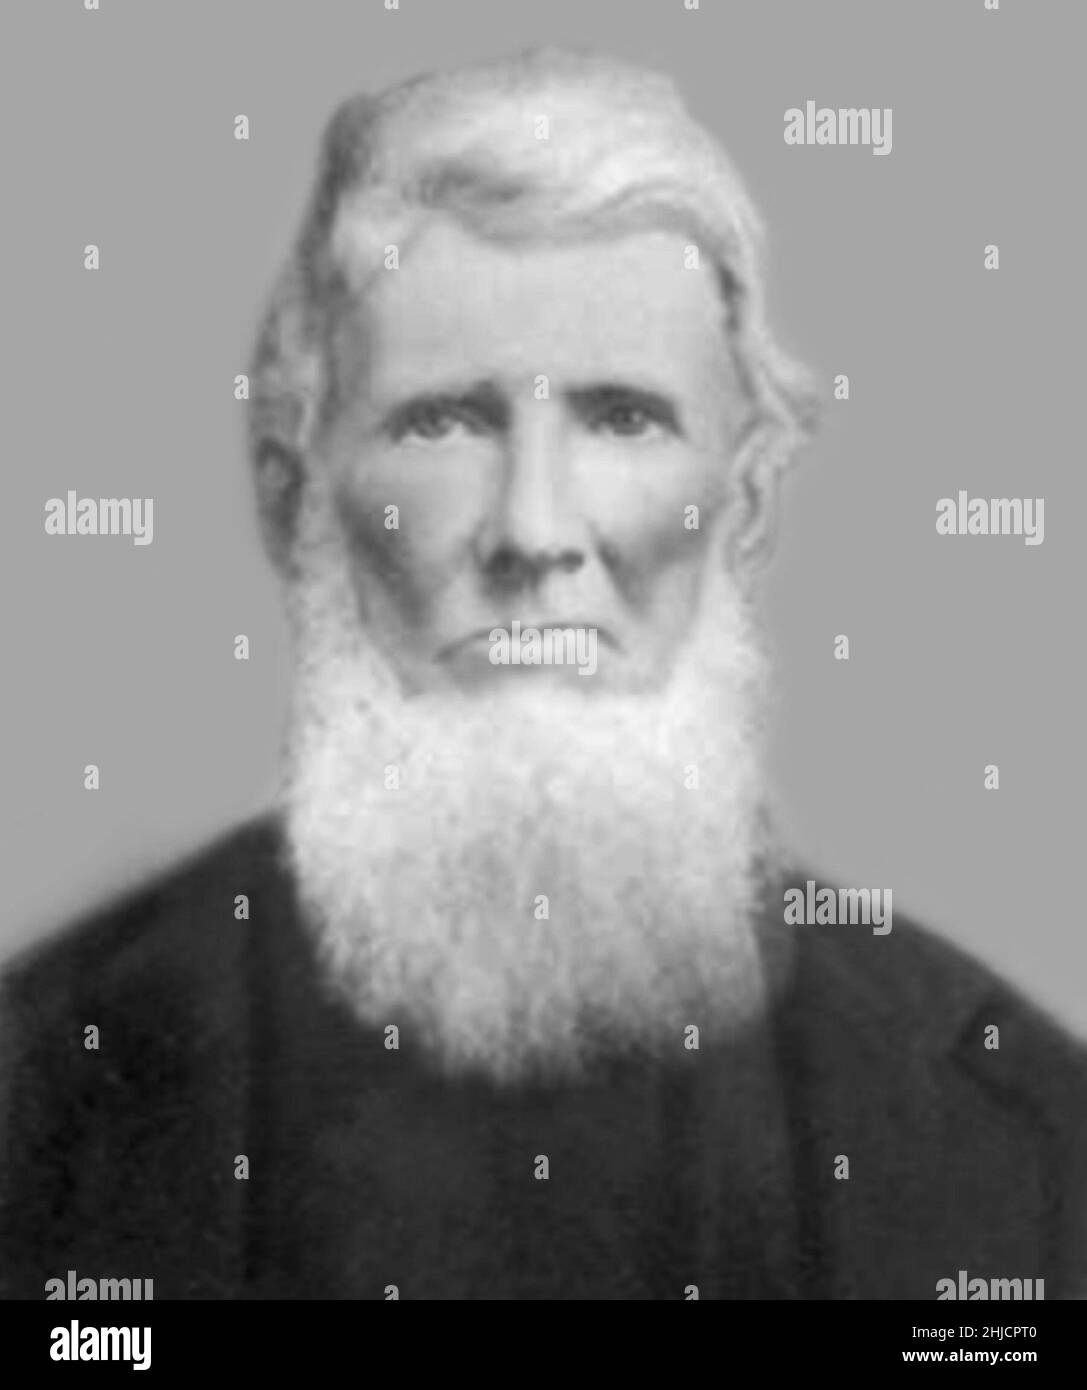 Ein Foto von Johnny Appleseed, um 1840s. John Chapman (1774-1845), besser bekannt als Johnny Appleseed, war ein amerikanischer Pionier der Baumschule, der Apfelbäume in weite Teile von Pennsylvania, Ohio, Indiana, Illinois und Ontario sowie in die nördlichen Grafschaften des heutigen West Virginia brachte. Mit seinen Baumbepflanzungen wurde er zu einer amerikanischen Legende. Stockfoto